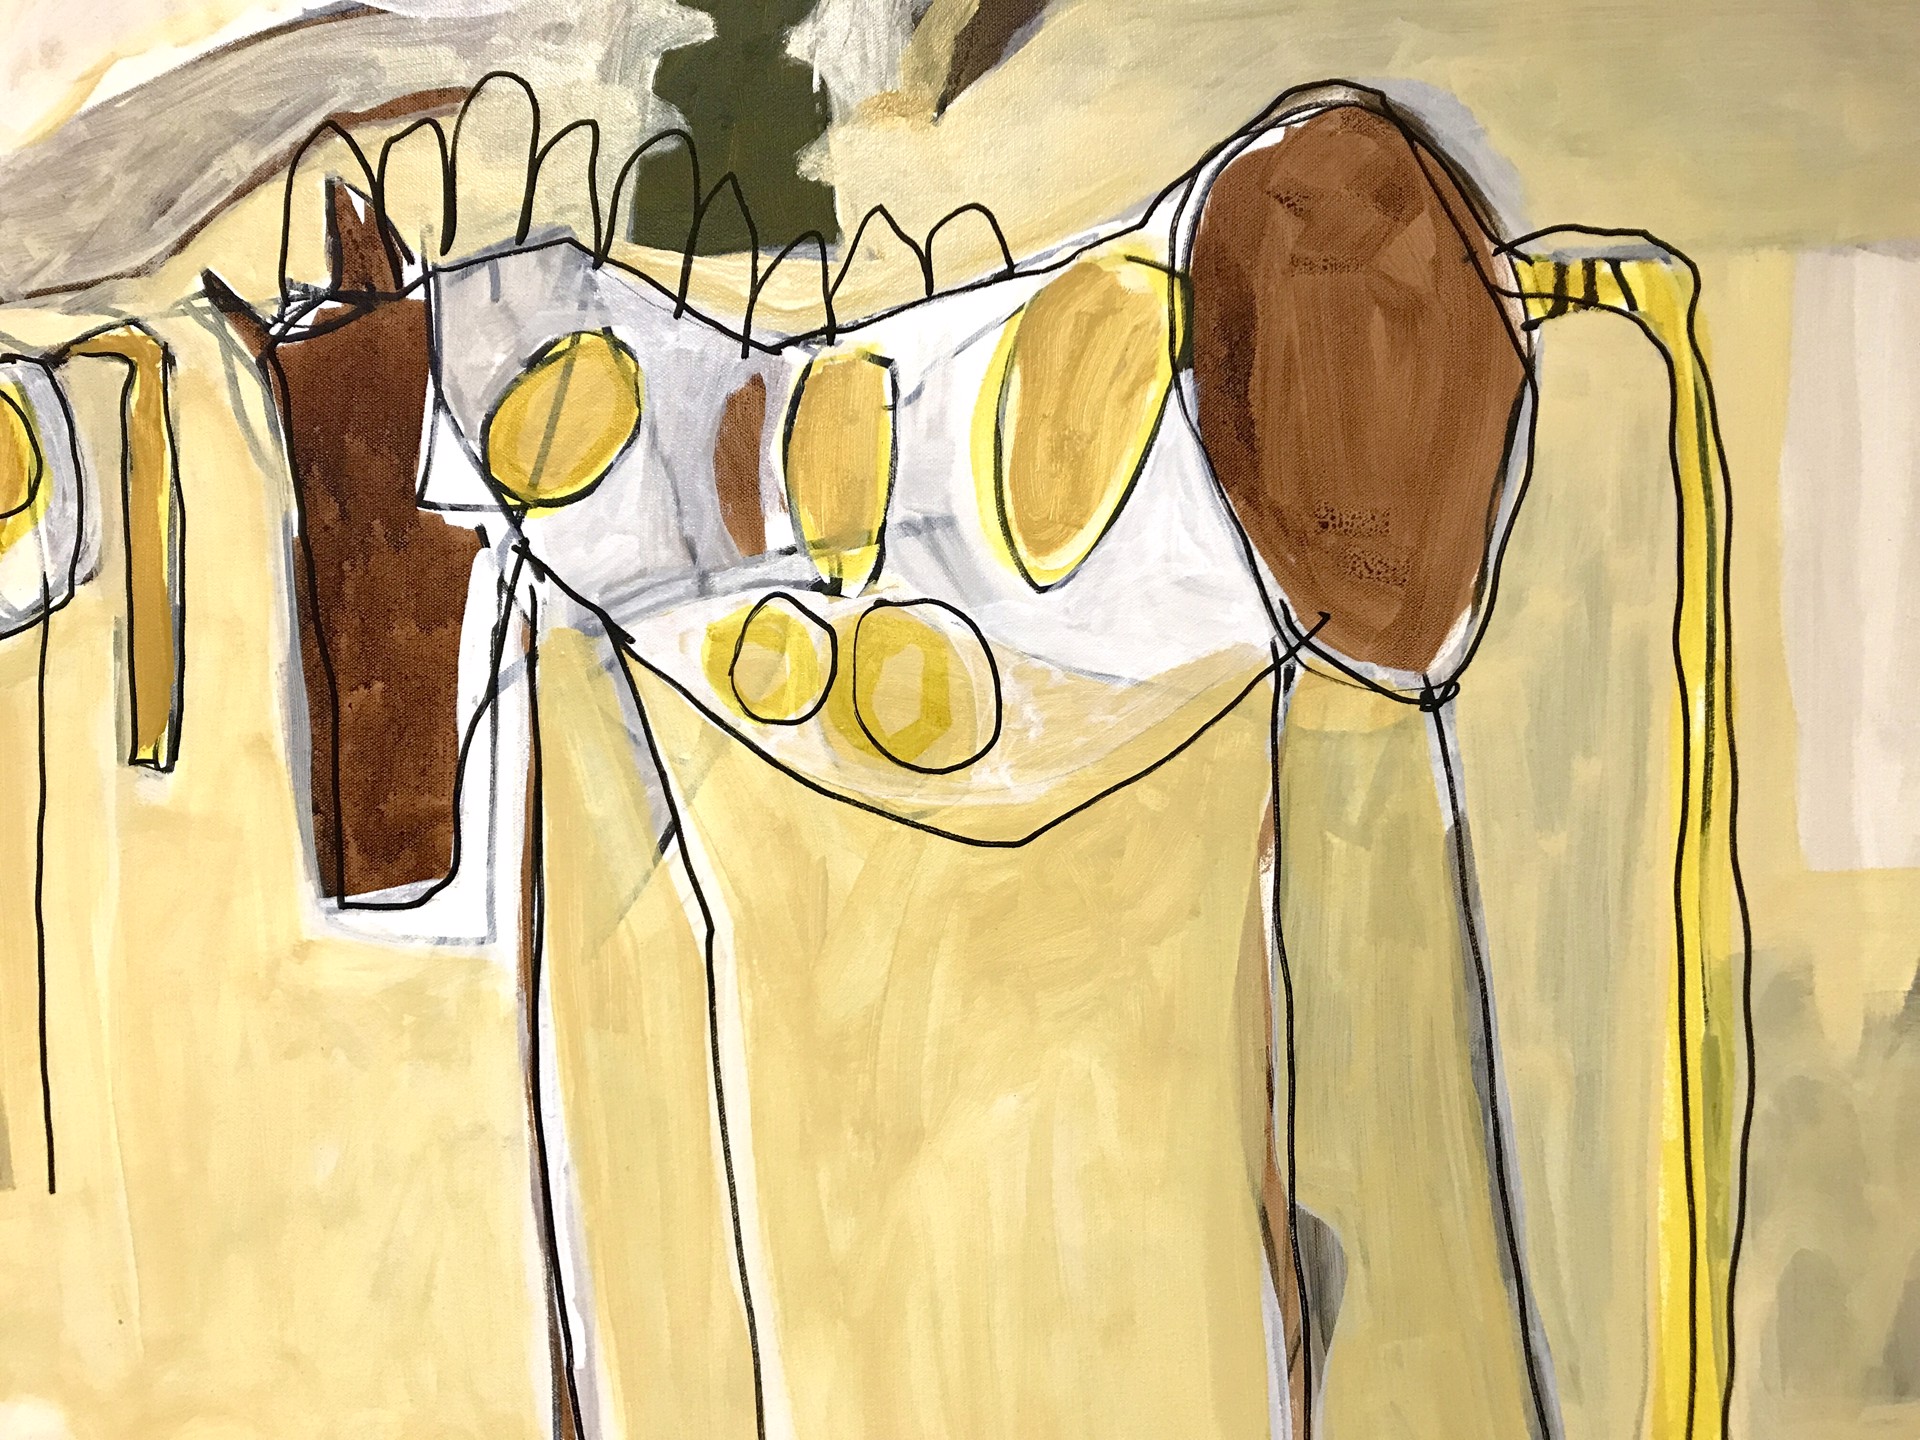 Three Wild Ponies by Rachael Van Dyke